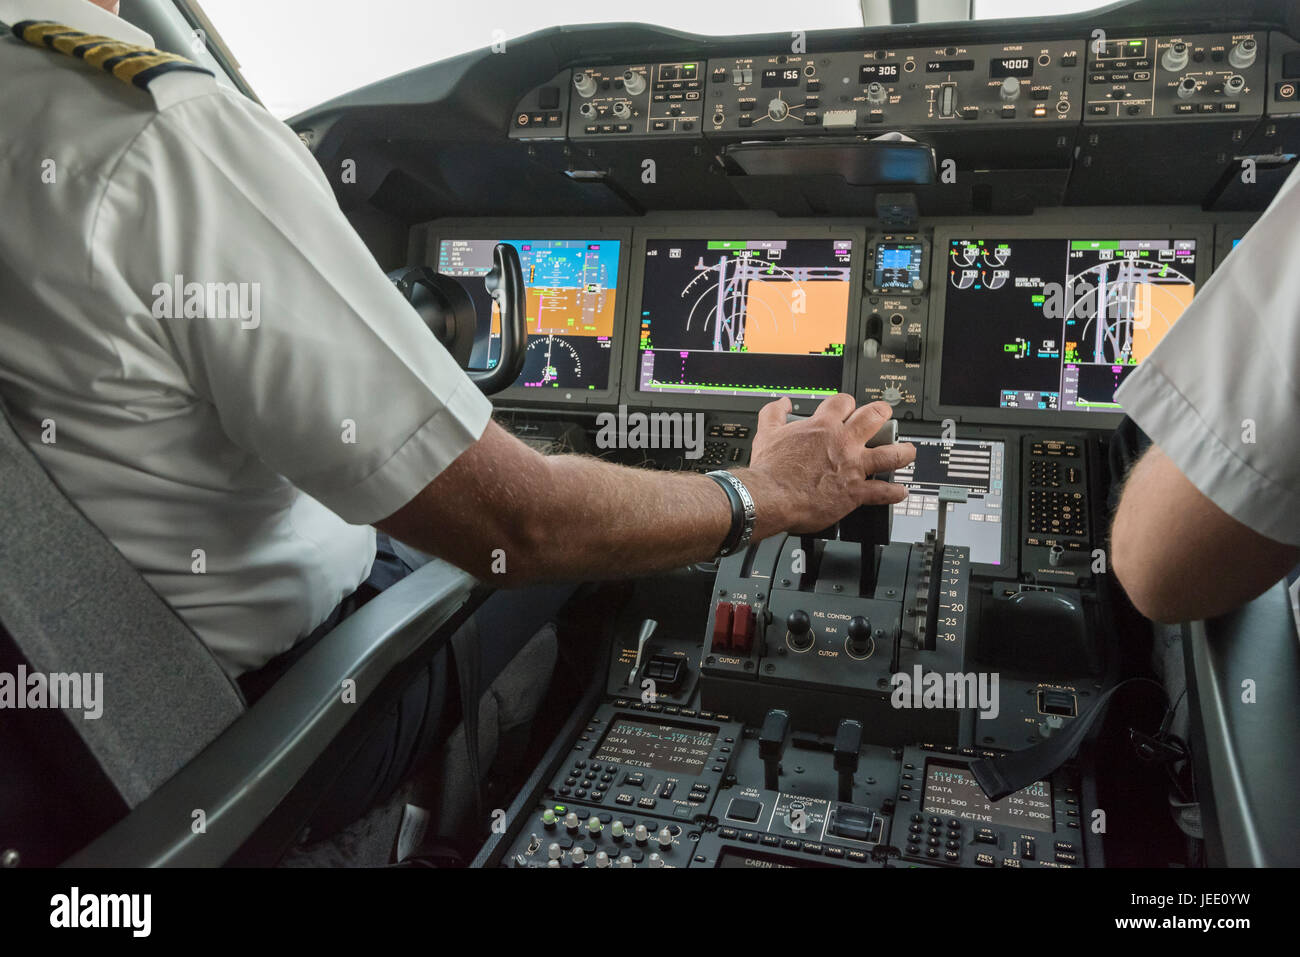 Cabina de vuelo de un avión comercial moderno con dos pilotos en los controles de vuelo Foto de stock